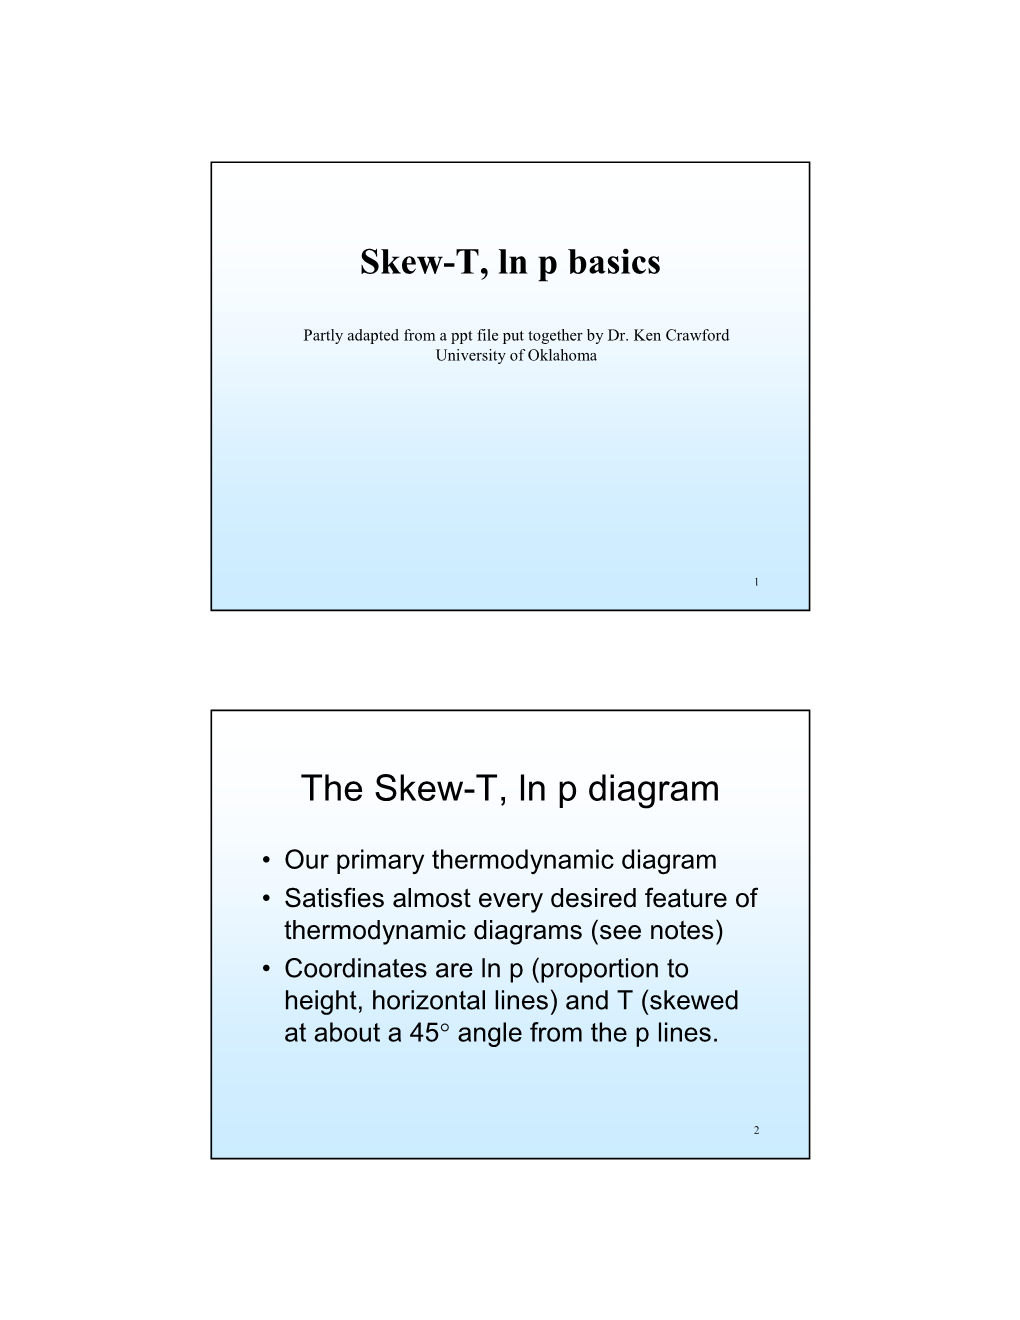 The Skew-T, Ln P Diagram